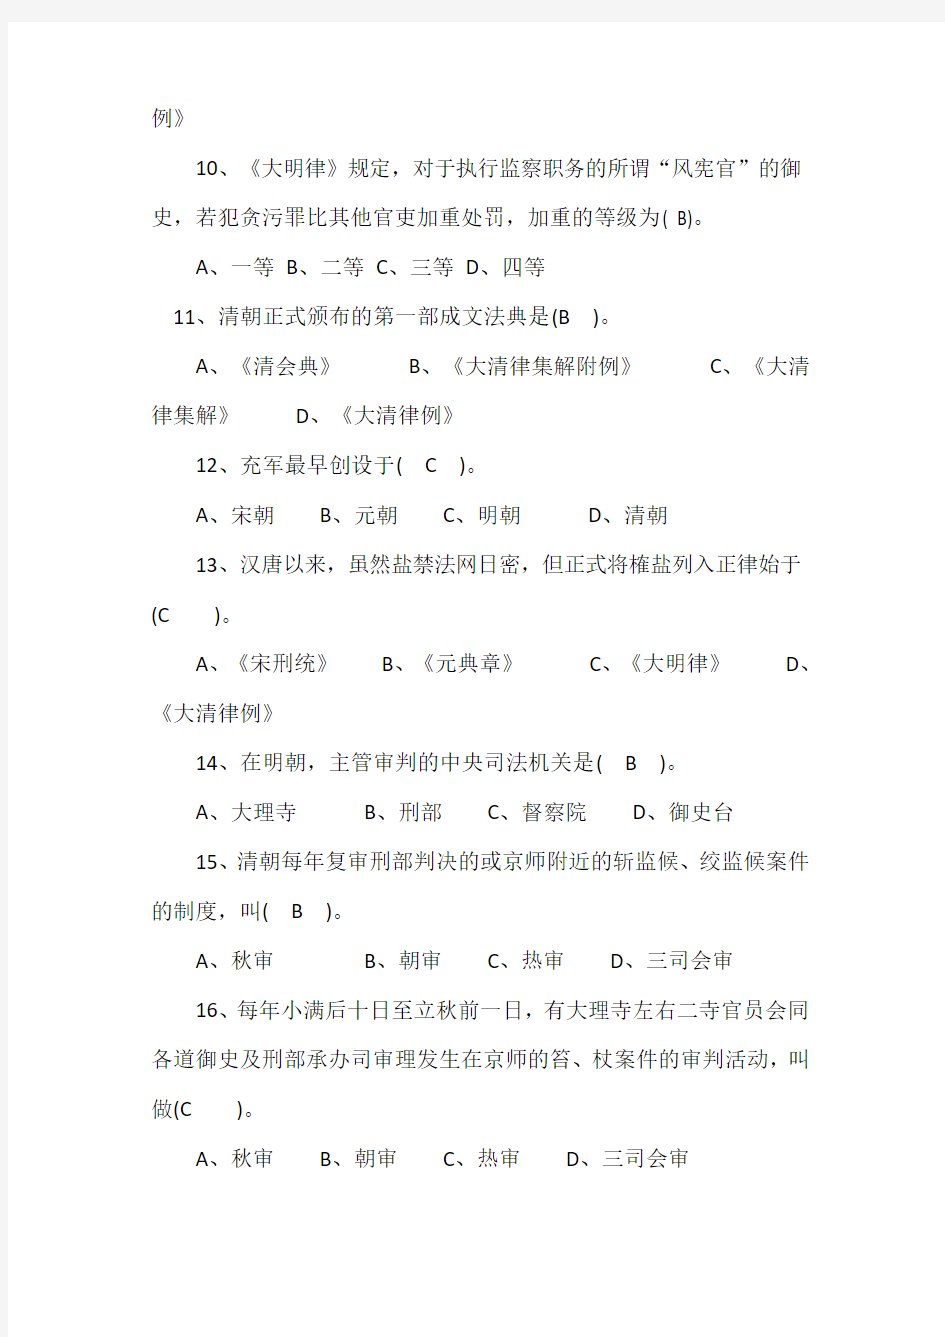 2019年法律职业资格考试《中国法律史》试题及答案(卷二)